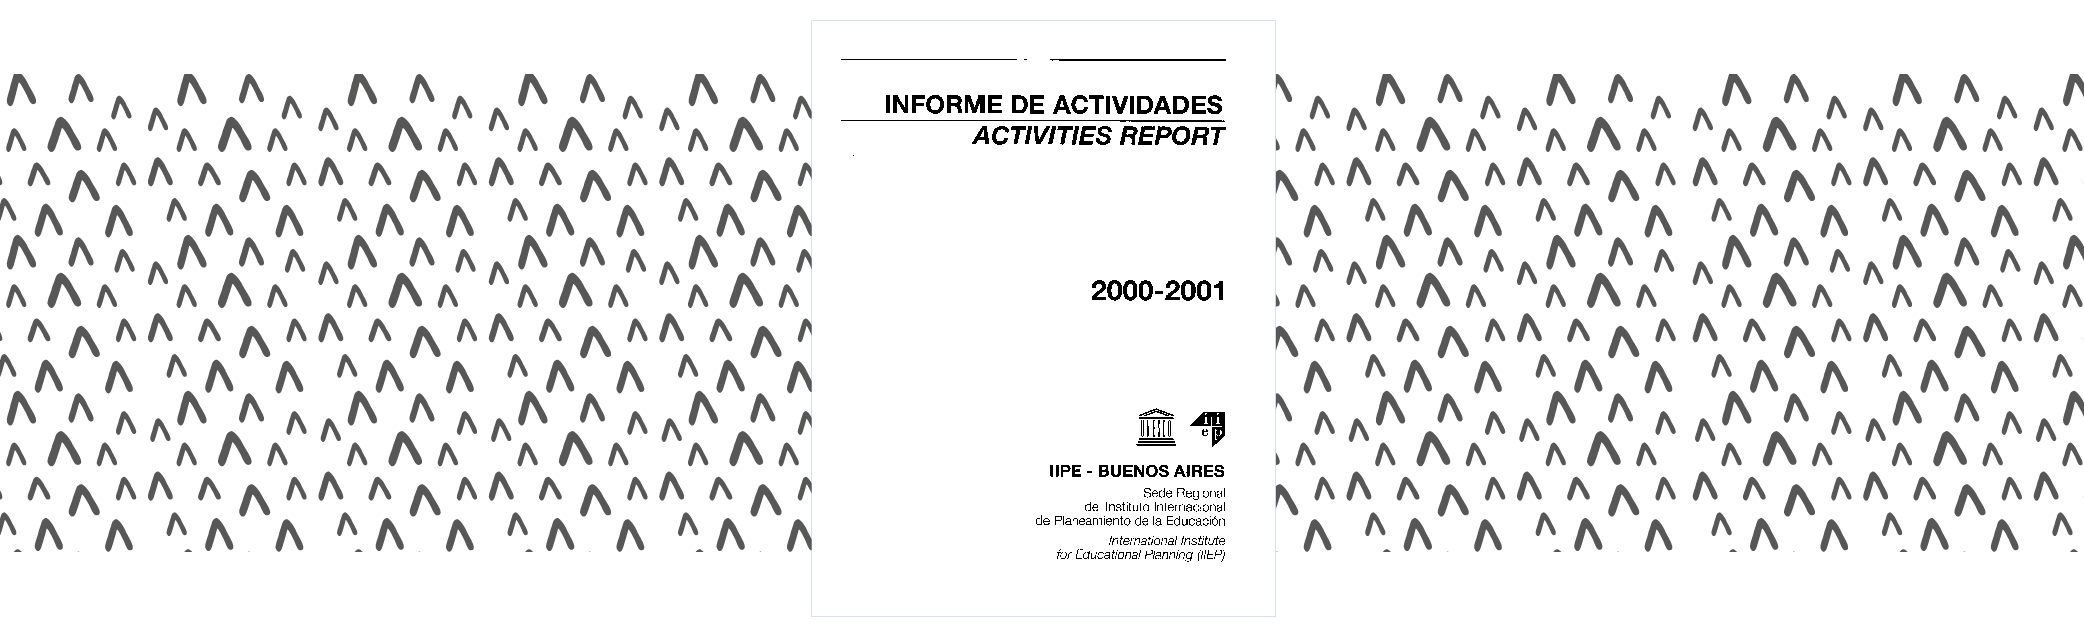 Informe de actividades 2000